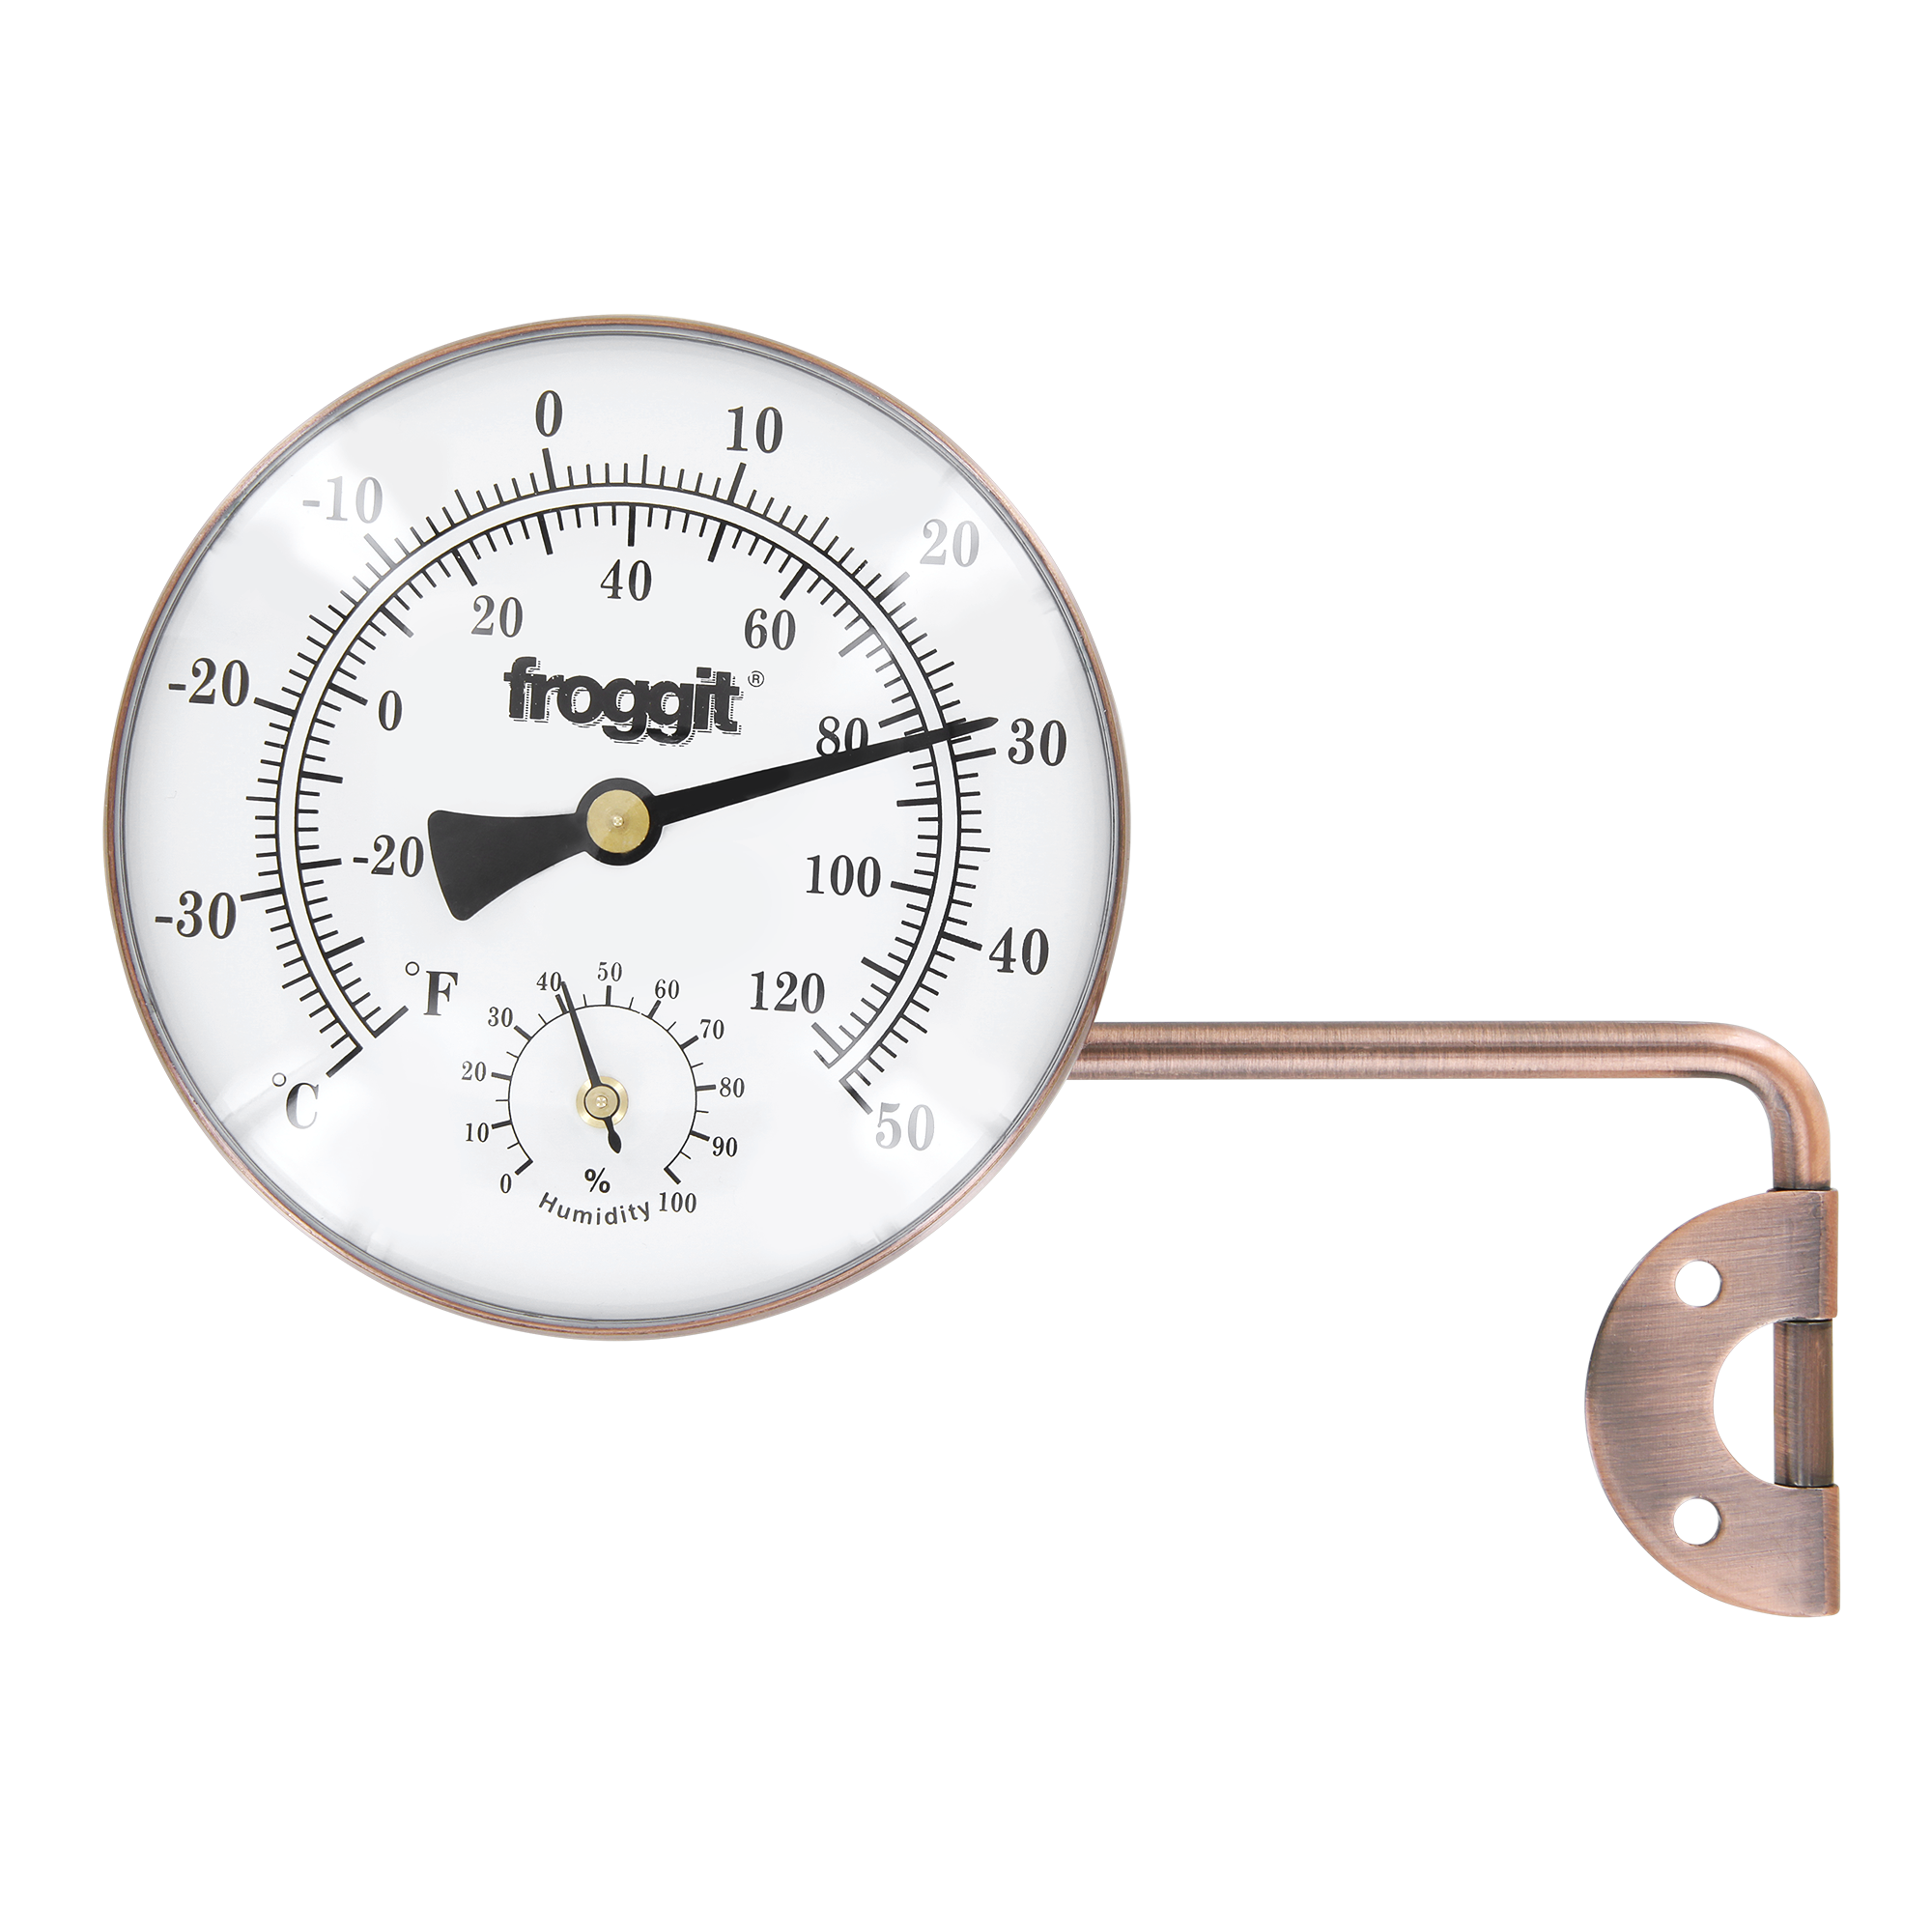 Froggit Wetterstationen Shop - Froggit Retro Metall Thermo-Hygrometer  (Kupferdesign) Außenthermometer, Luftfeuchte, Temperatur